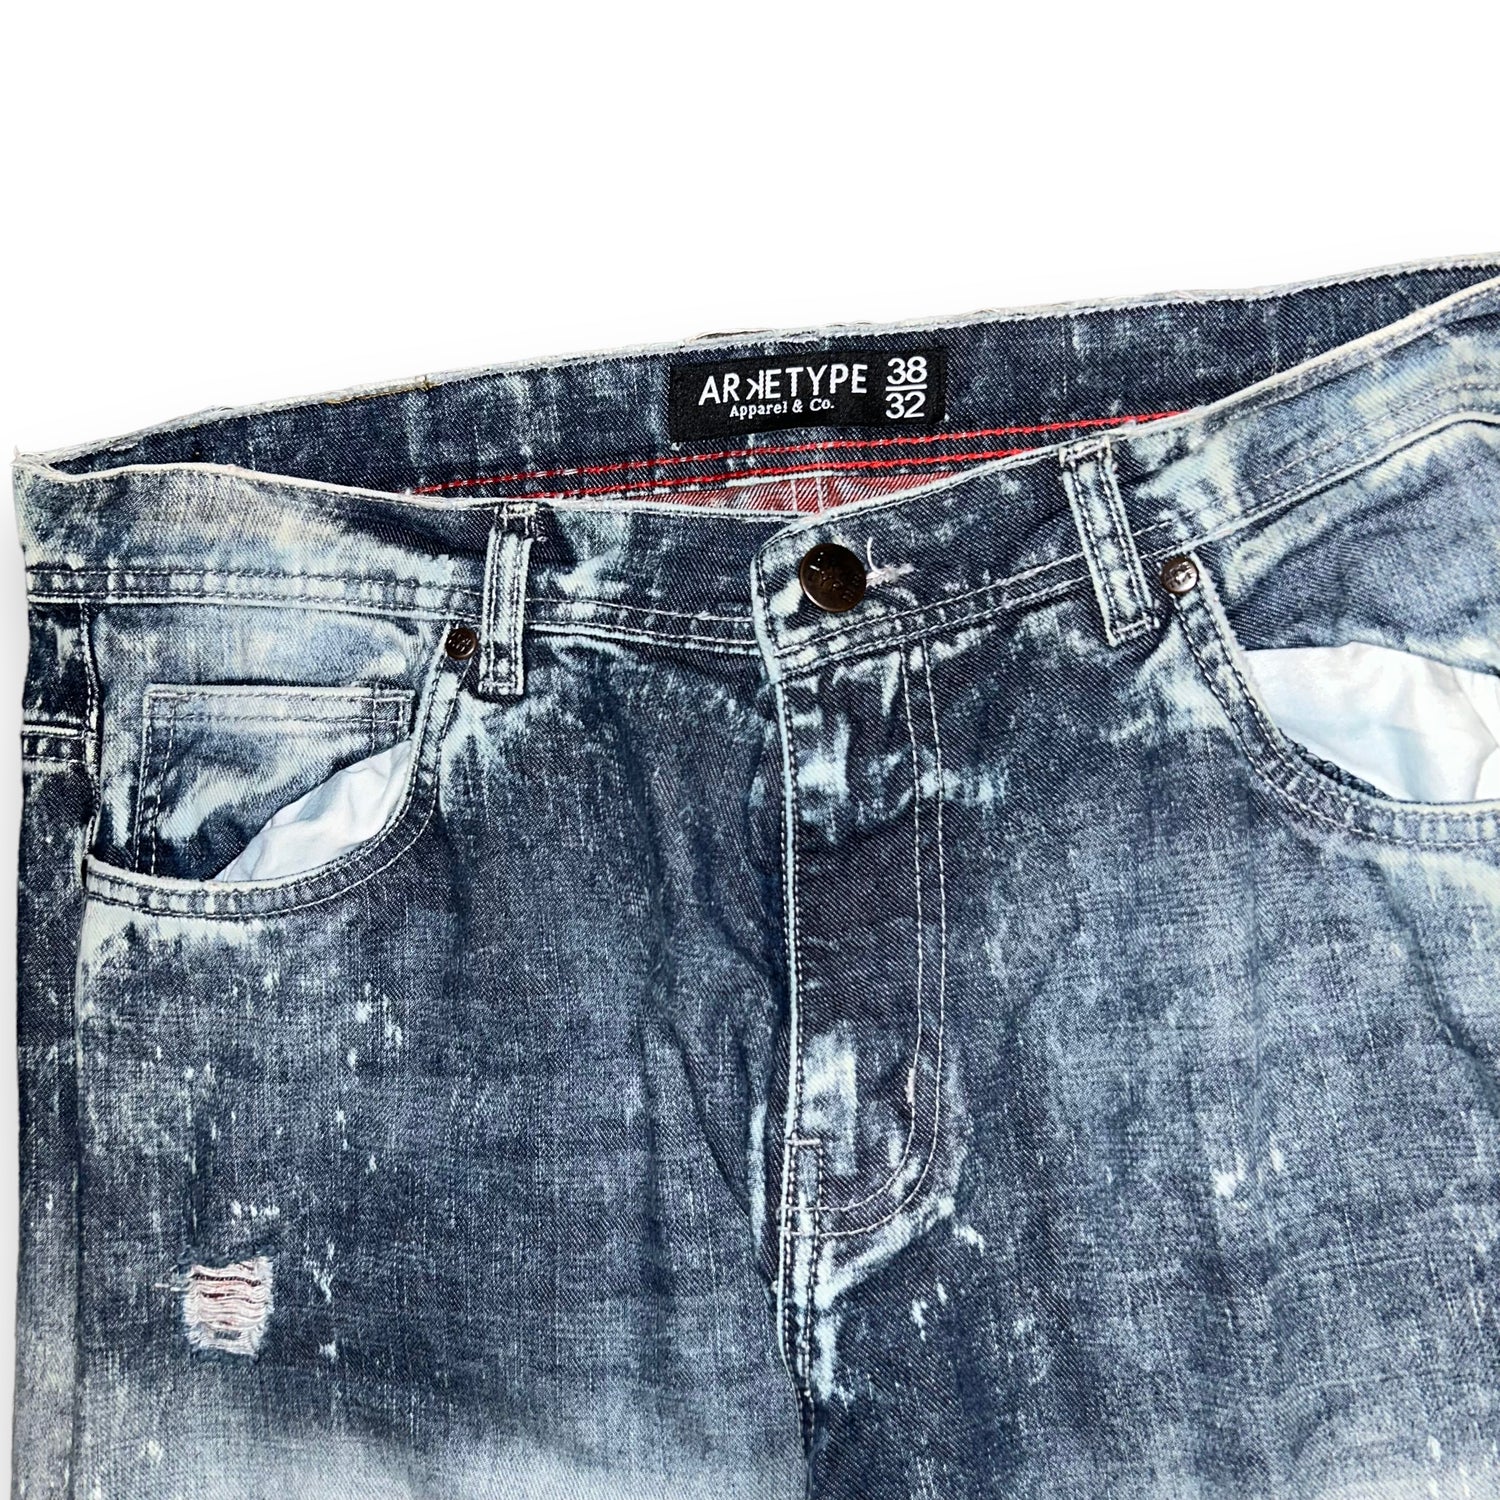 Jeans Arketype  (38 USA  XXL)